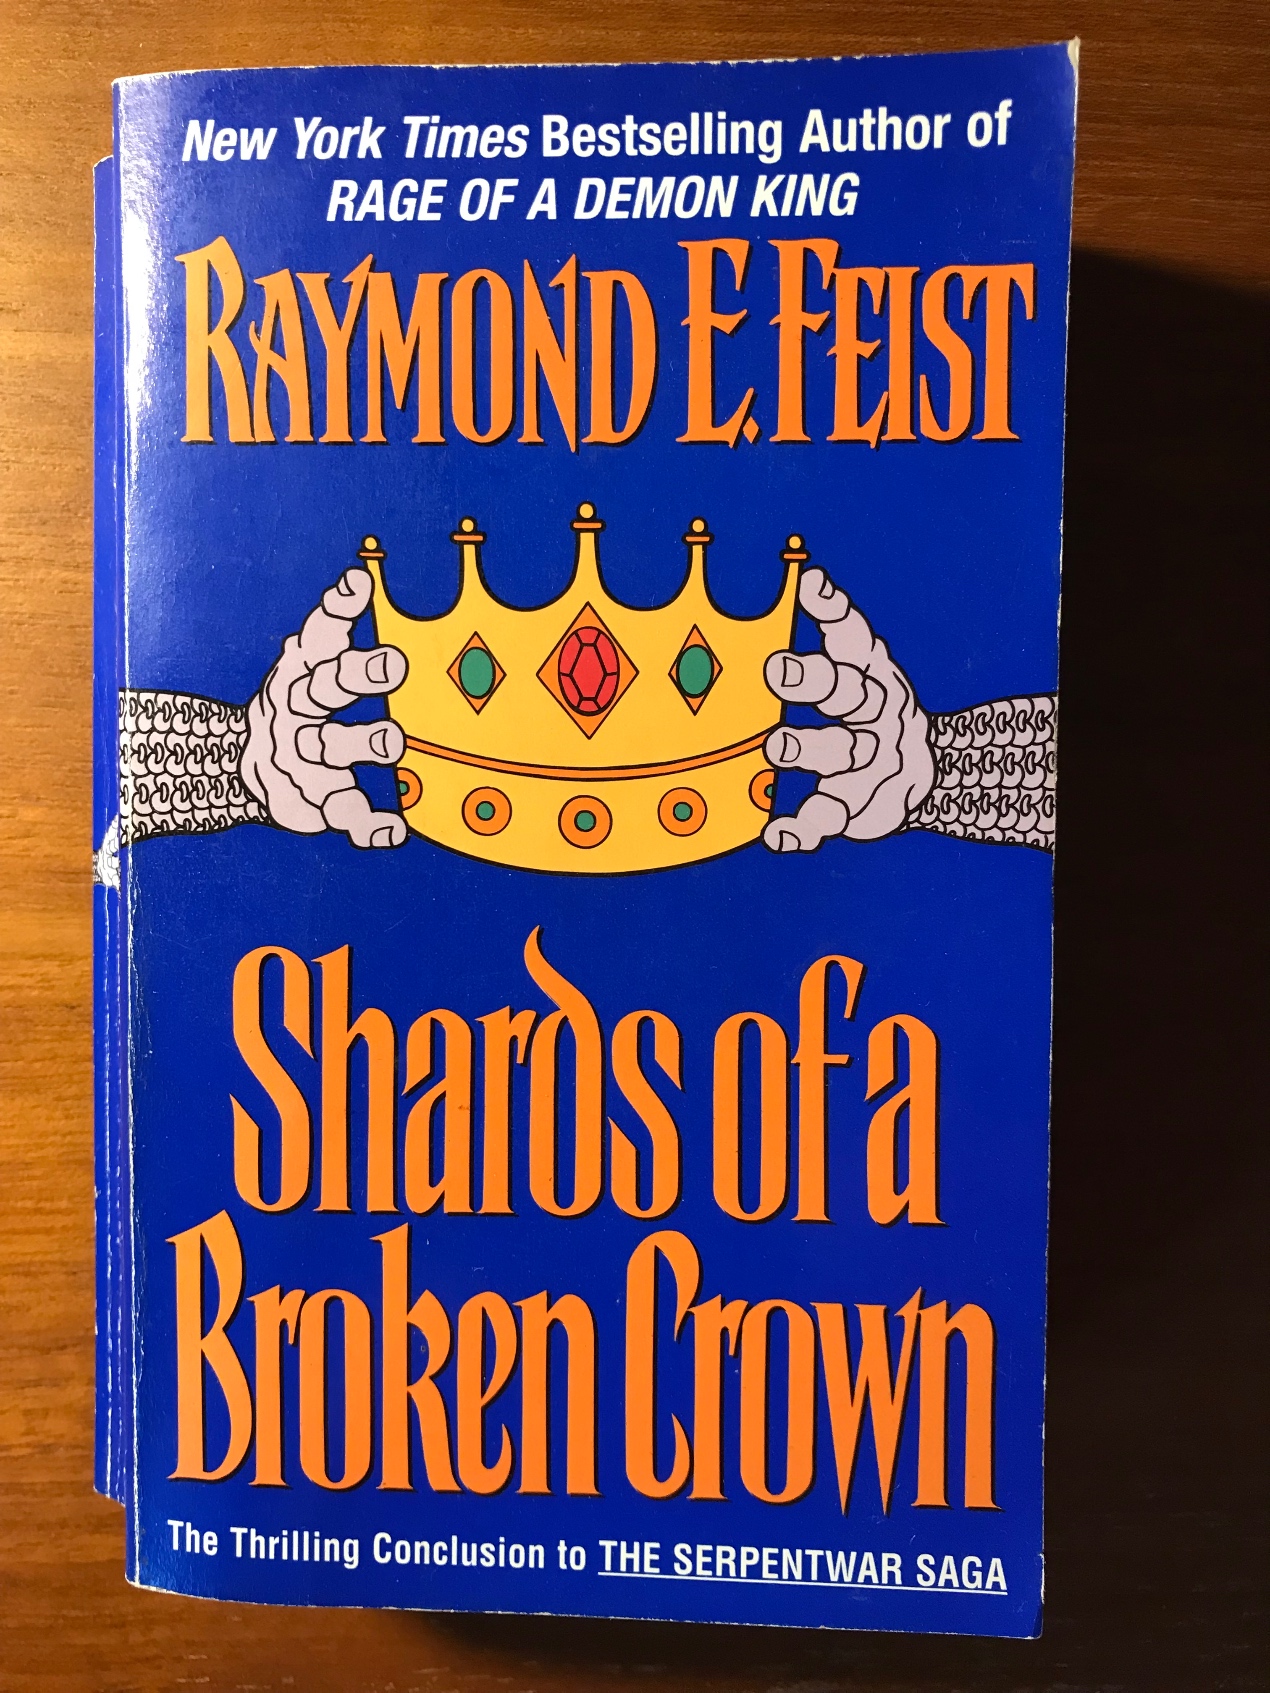 raymond feist fantasy book cover=